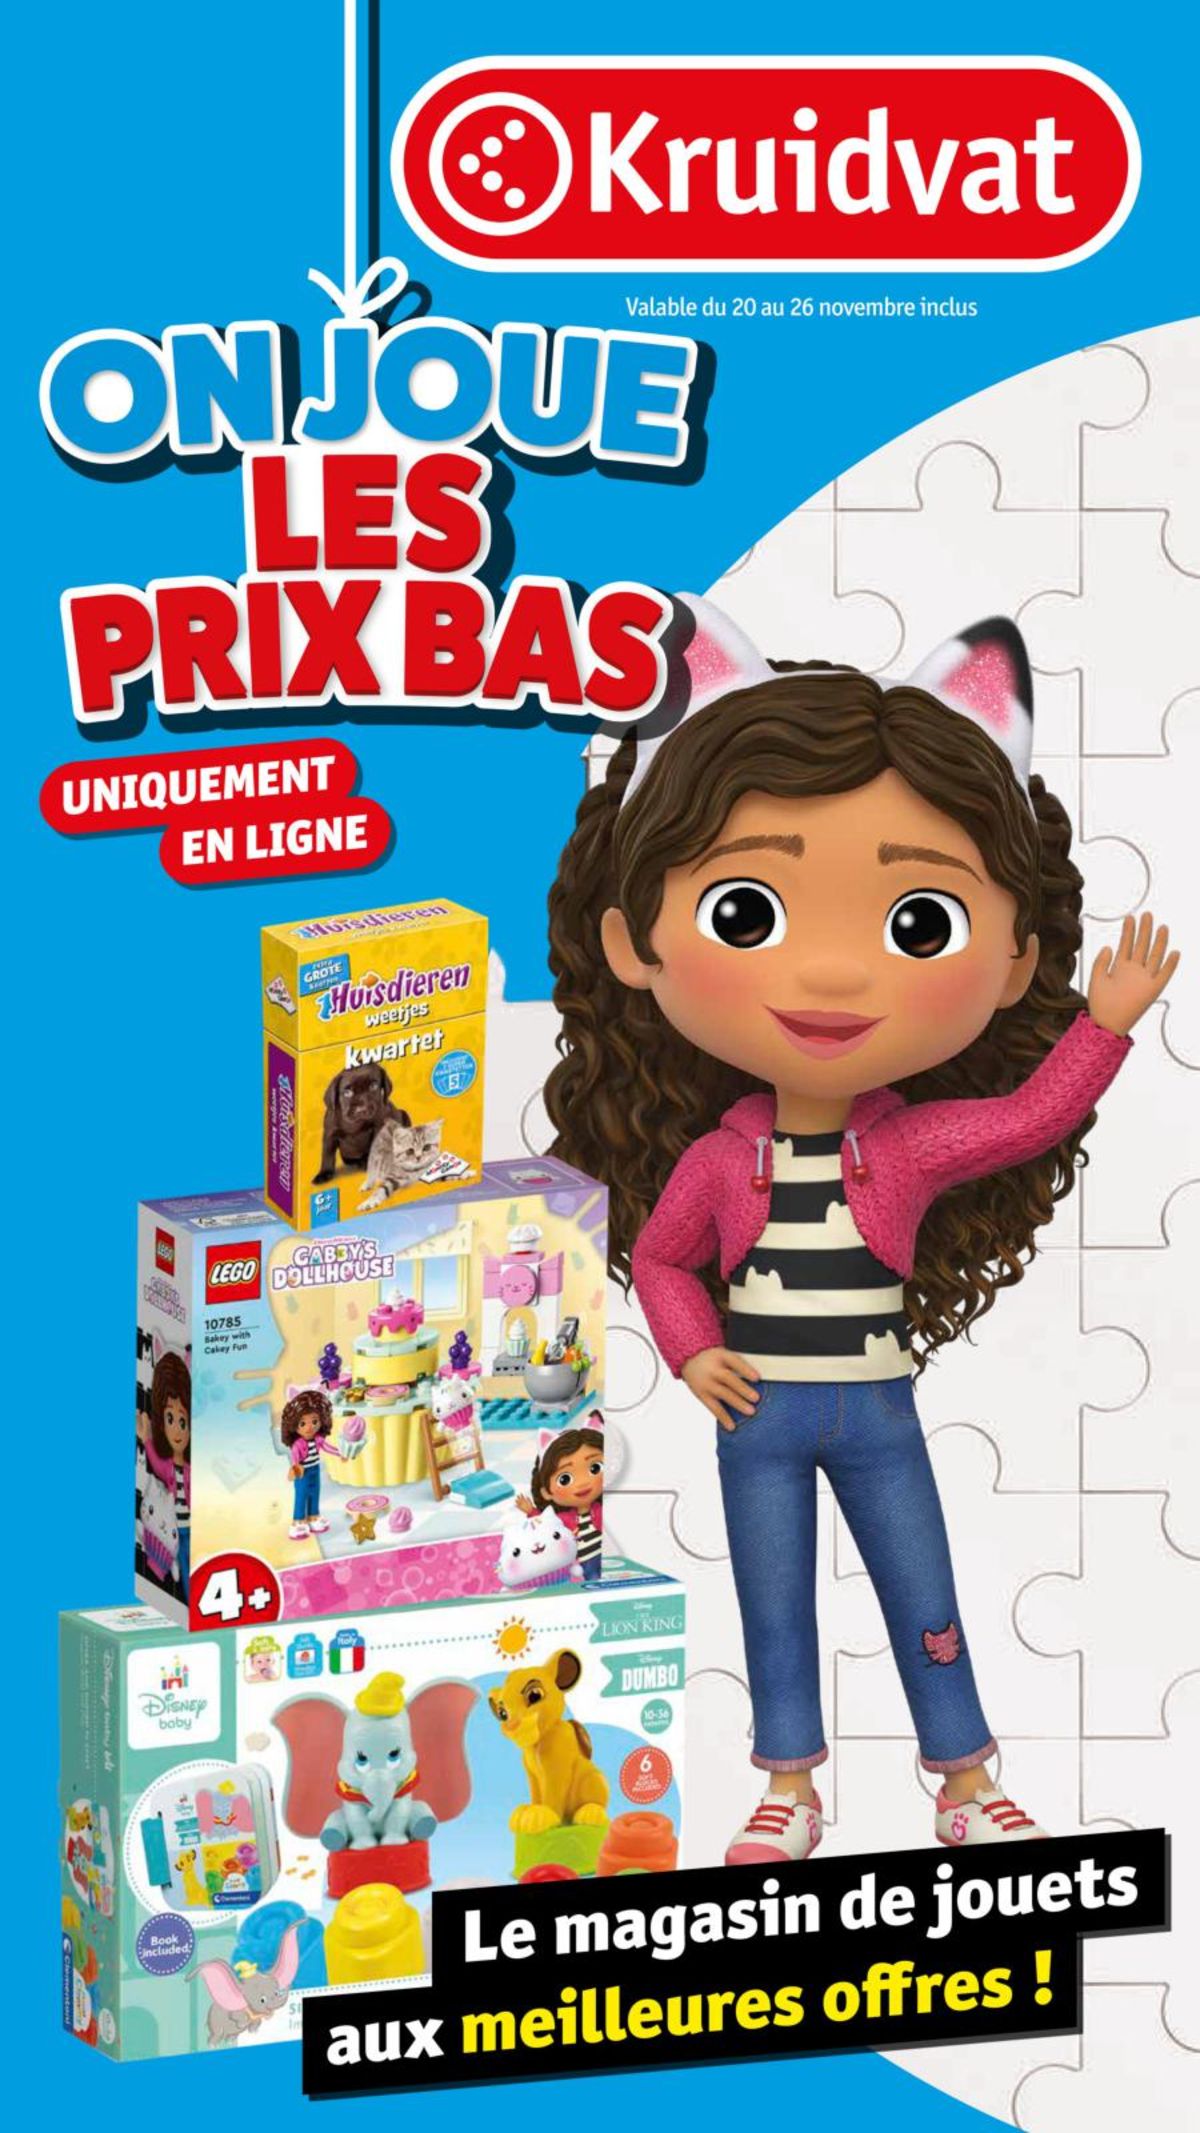 Catalogue Le magasin de jouets aux meilleures offres !, page 00001